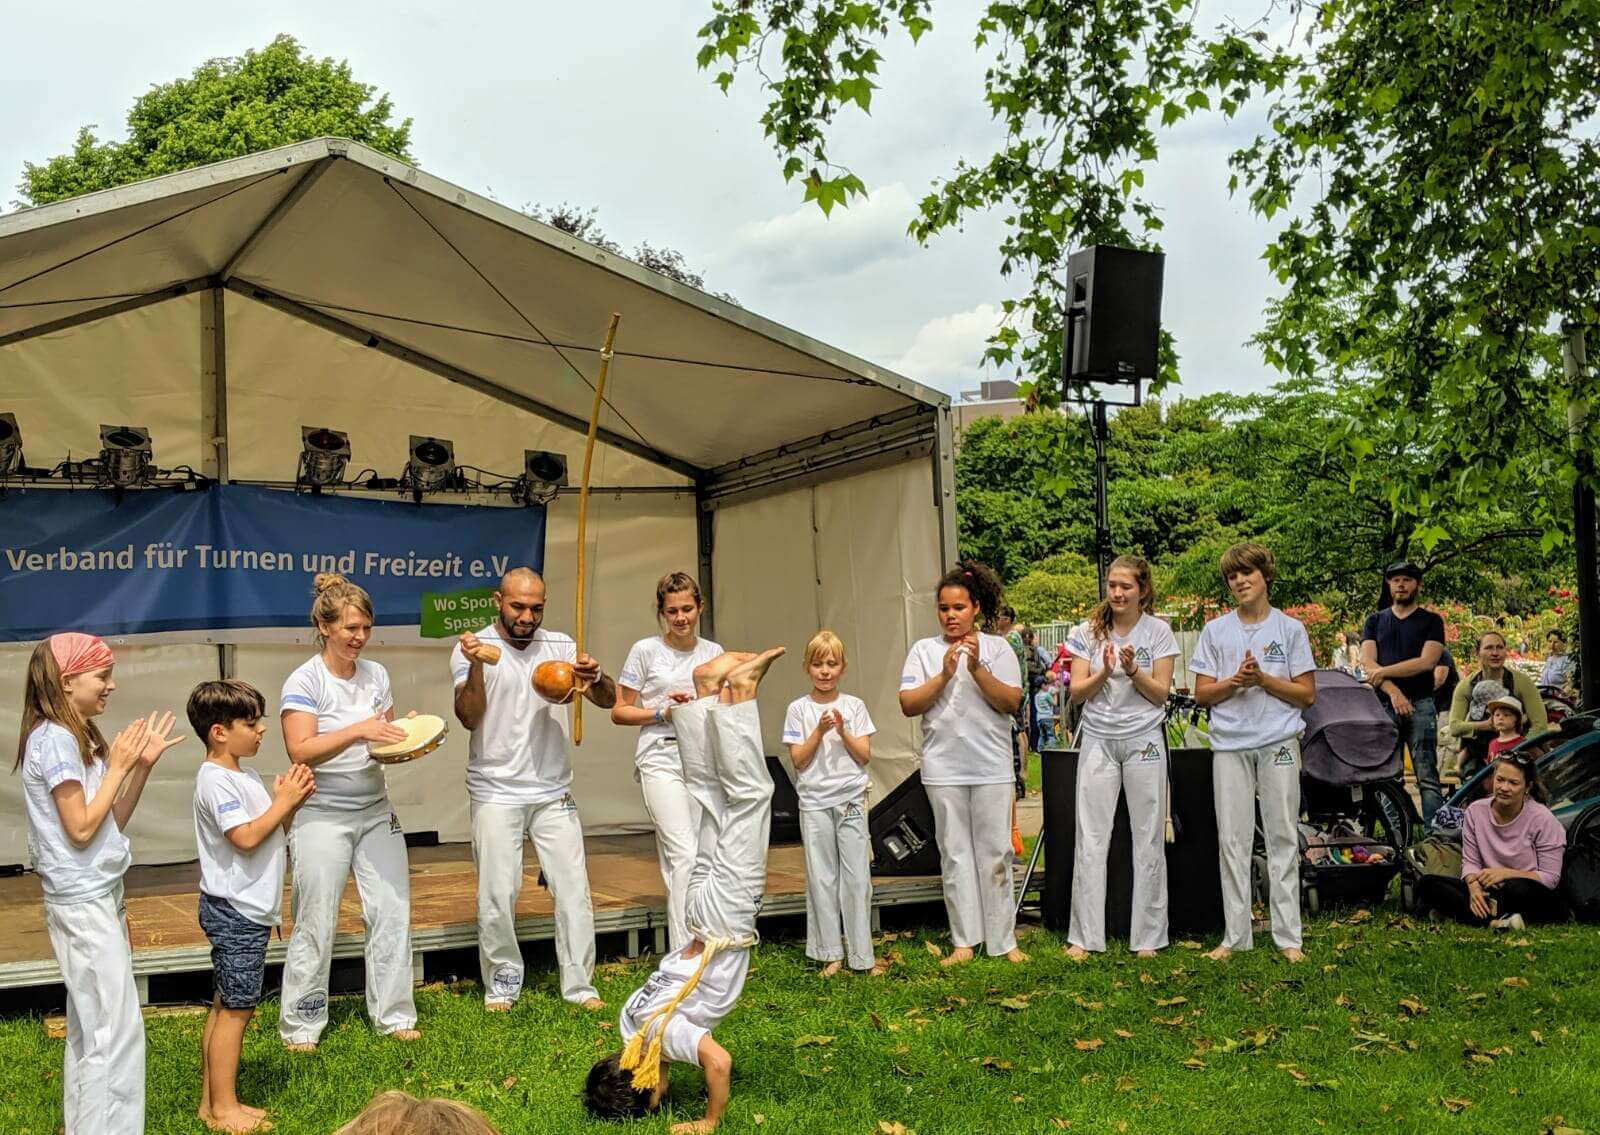 laut und luise Kinderfest - Auftritt der Vereinsgruppe Capoeira Aruanda